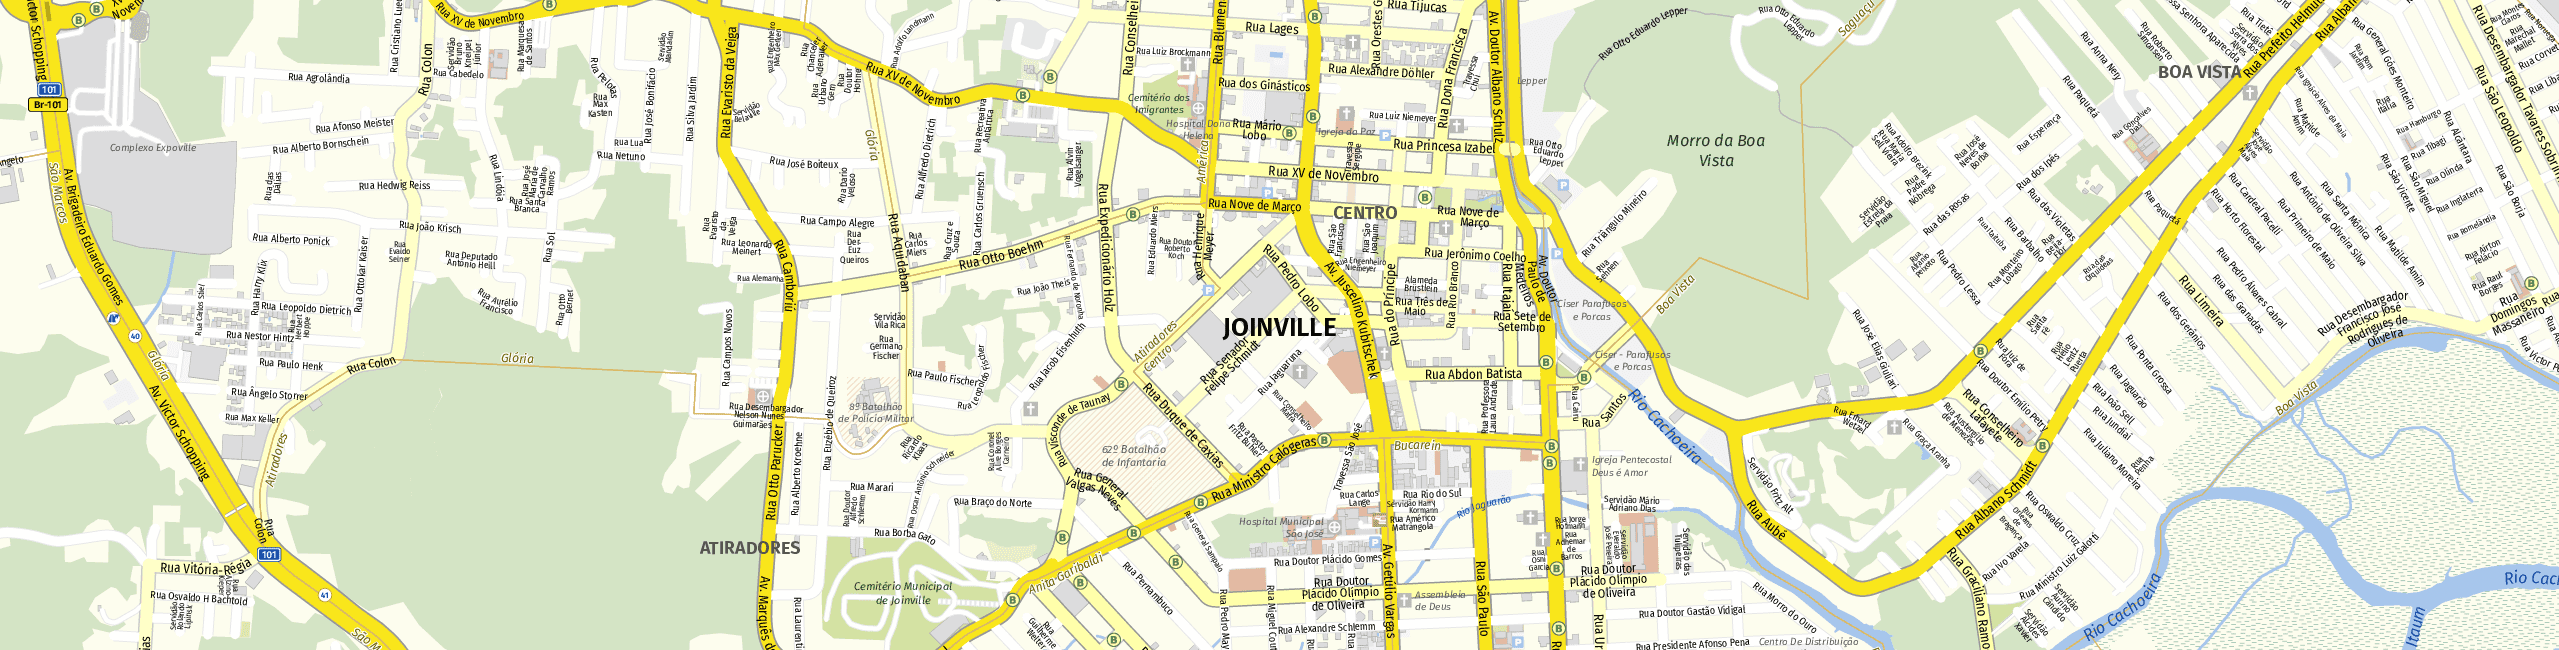 Stadtplan Joinville zum Downloaden.